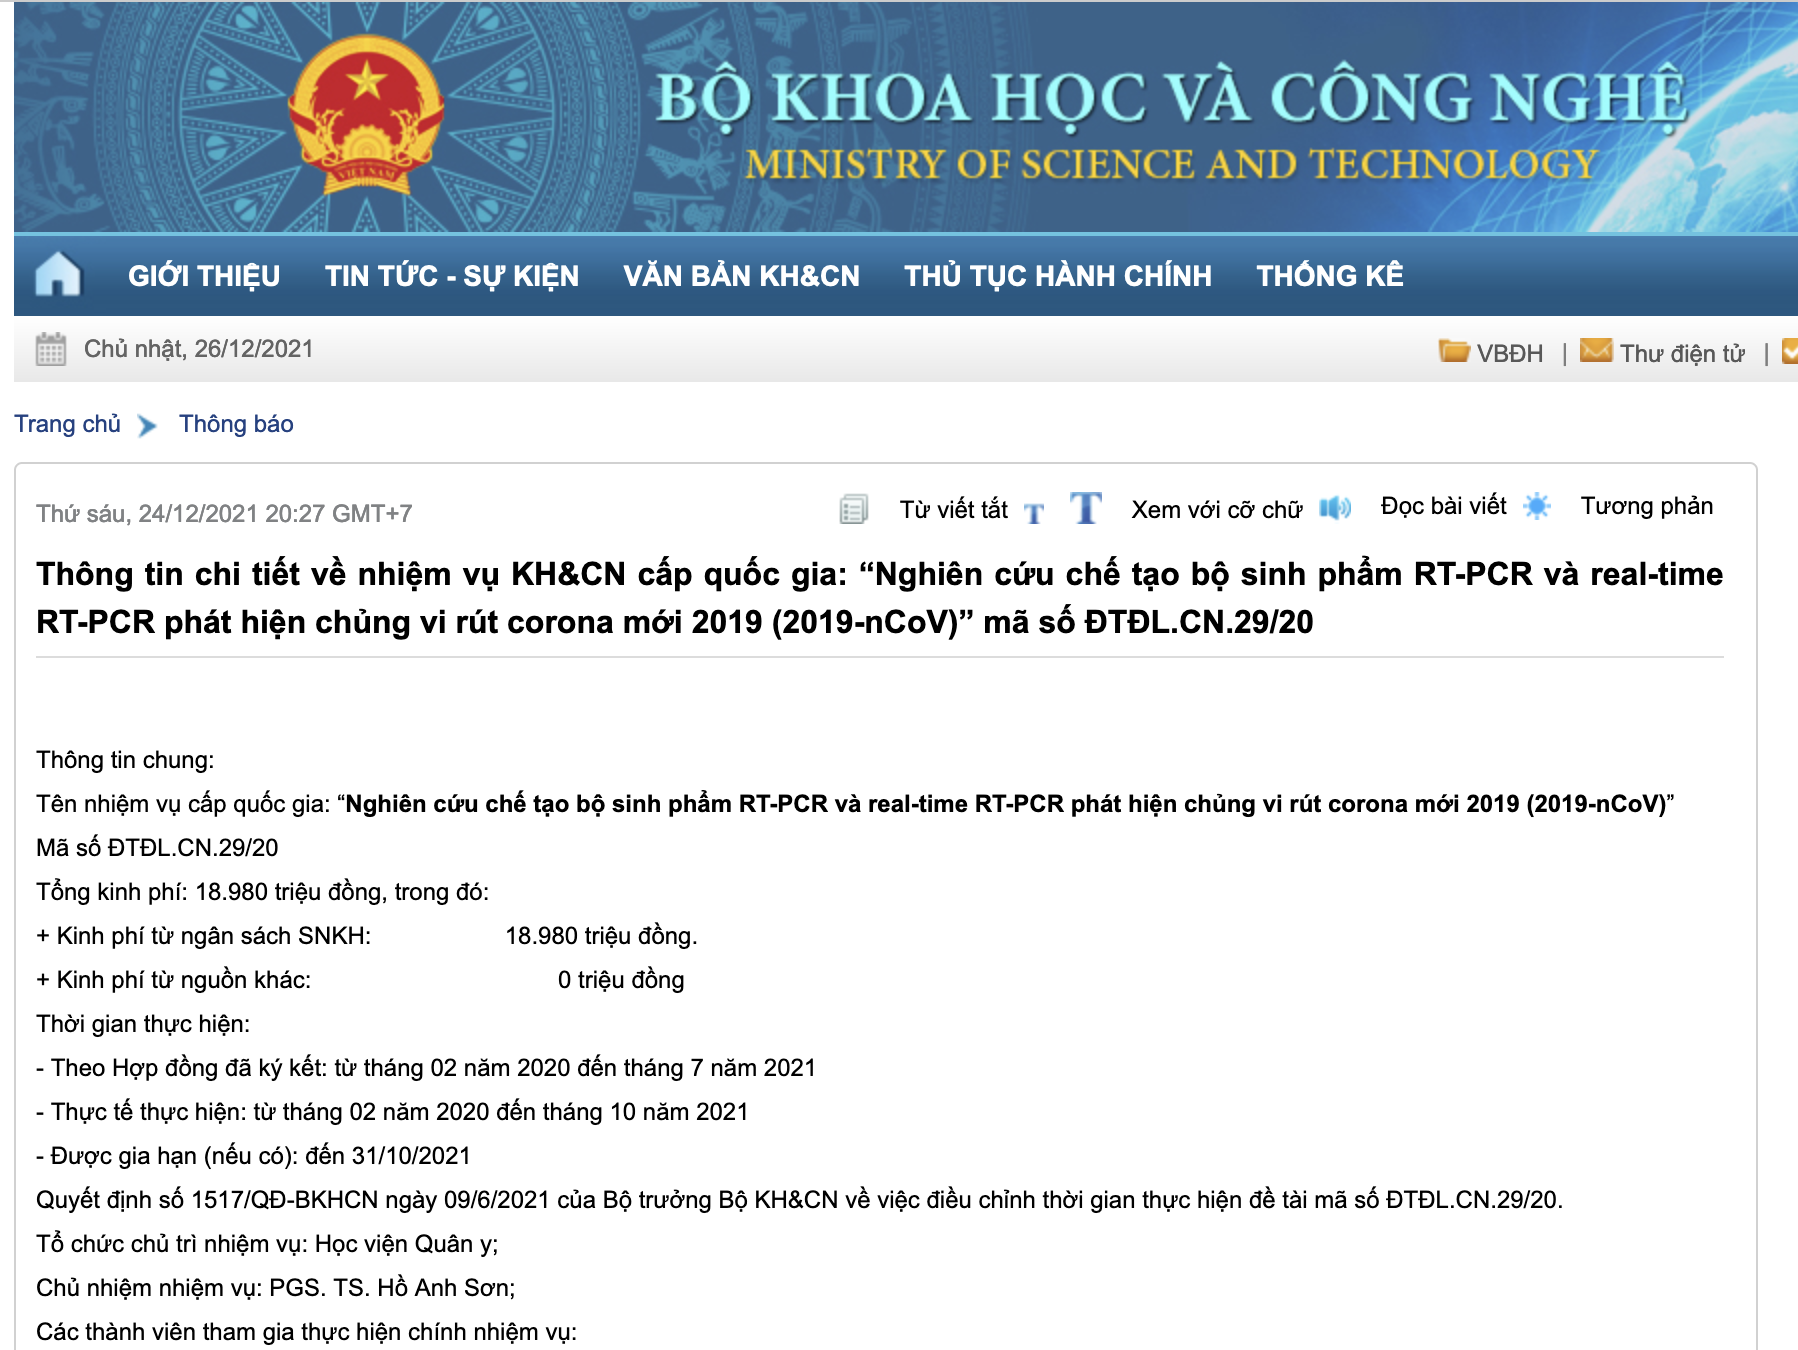 Bộ KH&CN: Công ty Việt Á được cấp kinh phí gần 19 tỷ để nghiên cứu kit test - Ảnh 1.